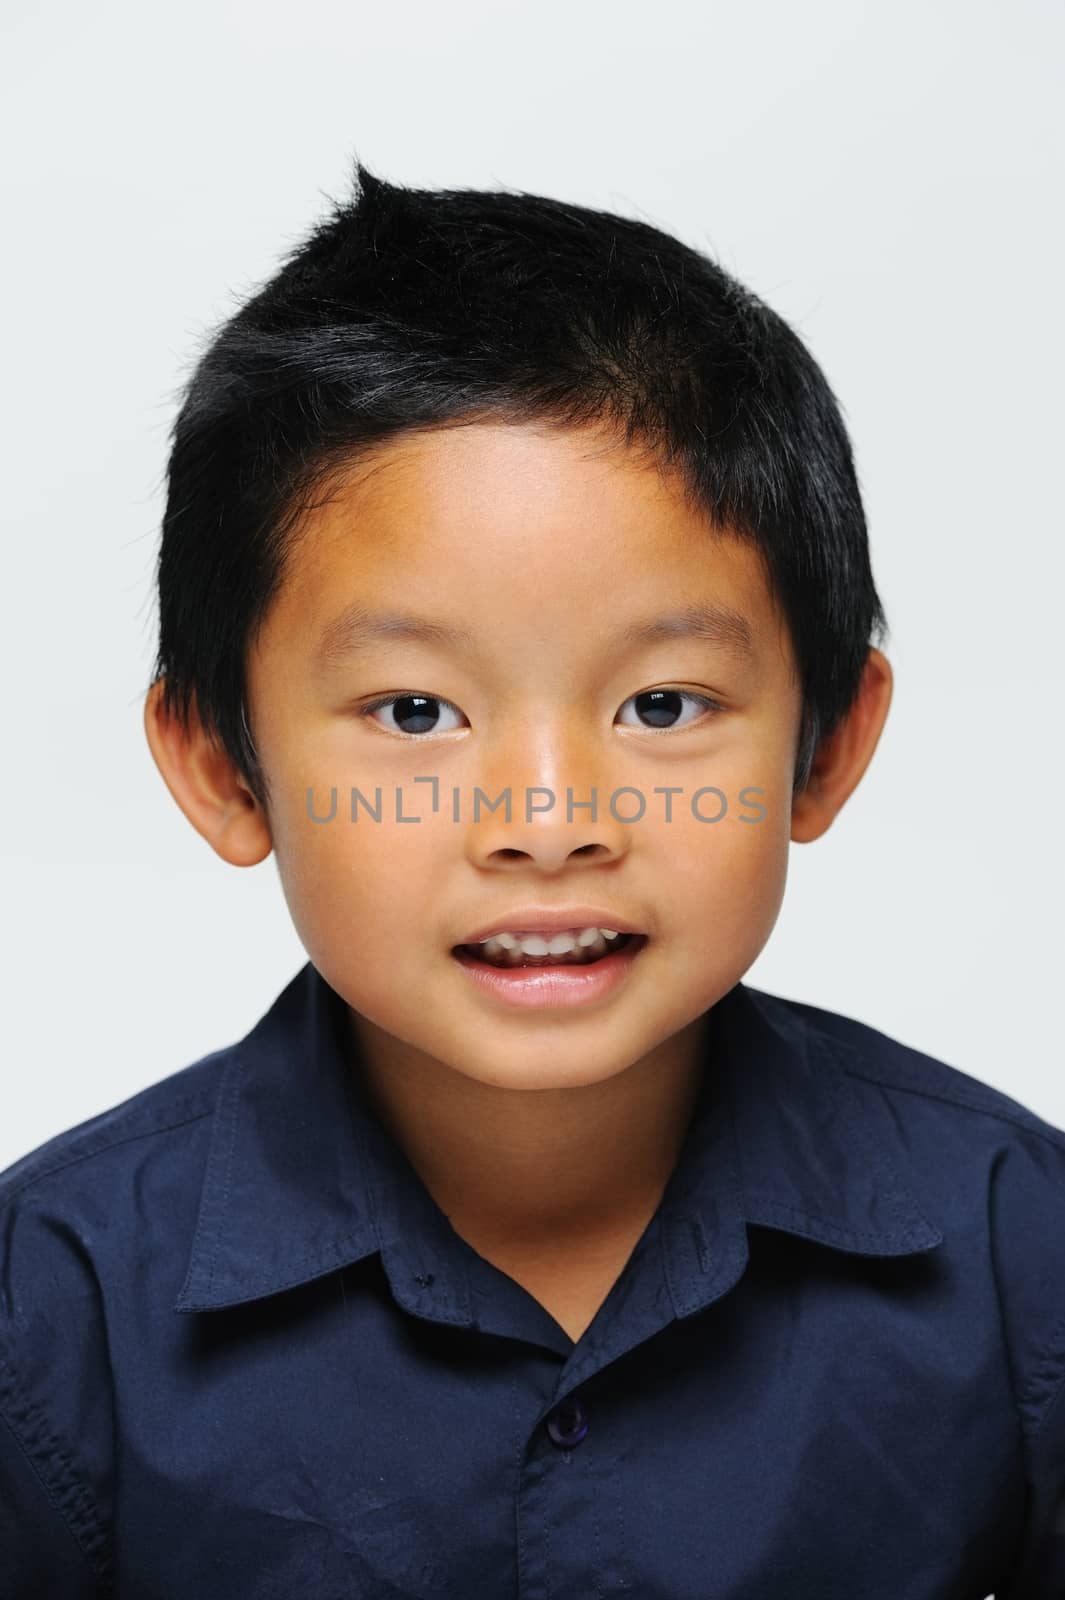 Asian boy looking at camera and smiling